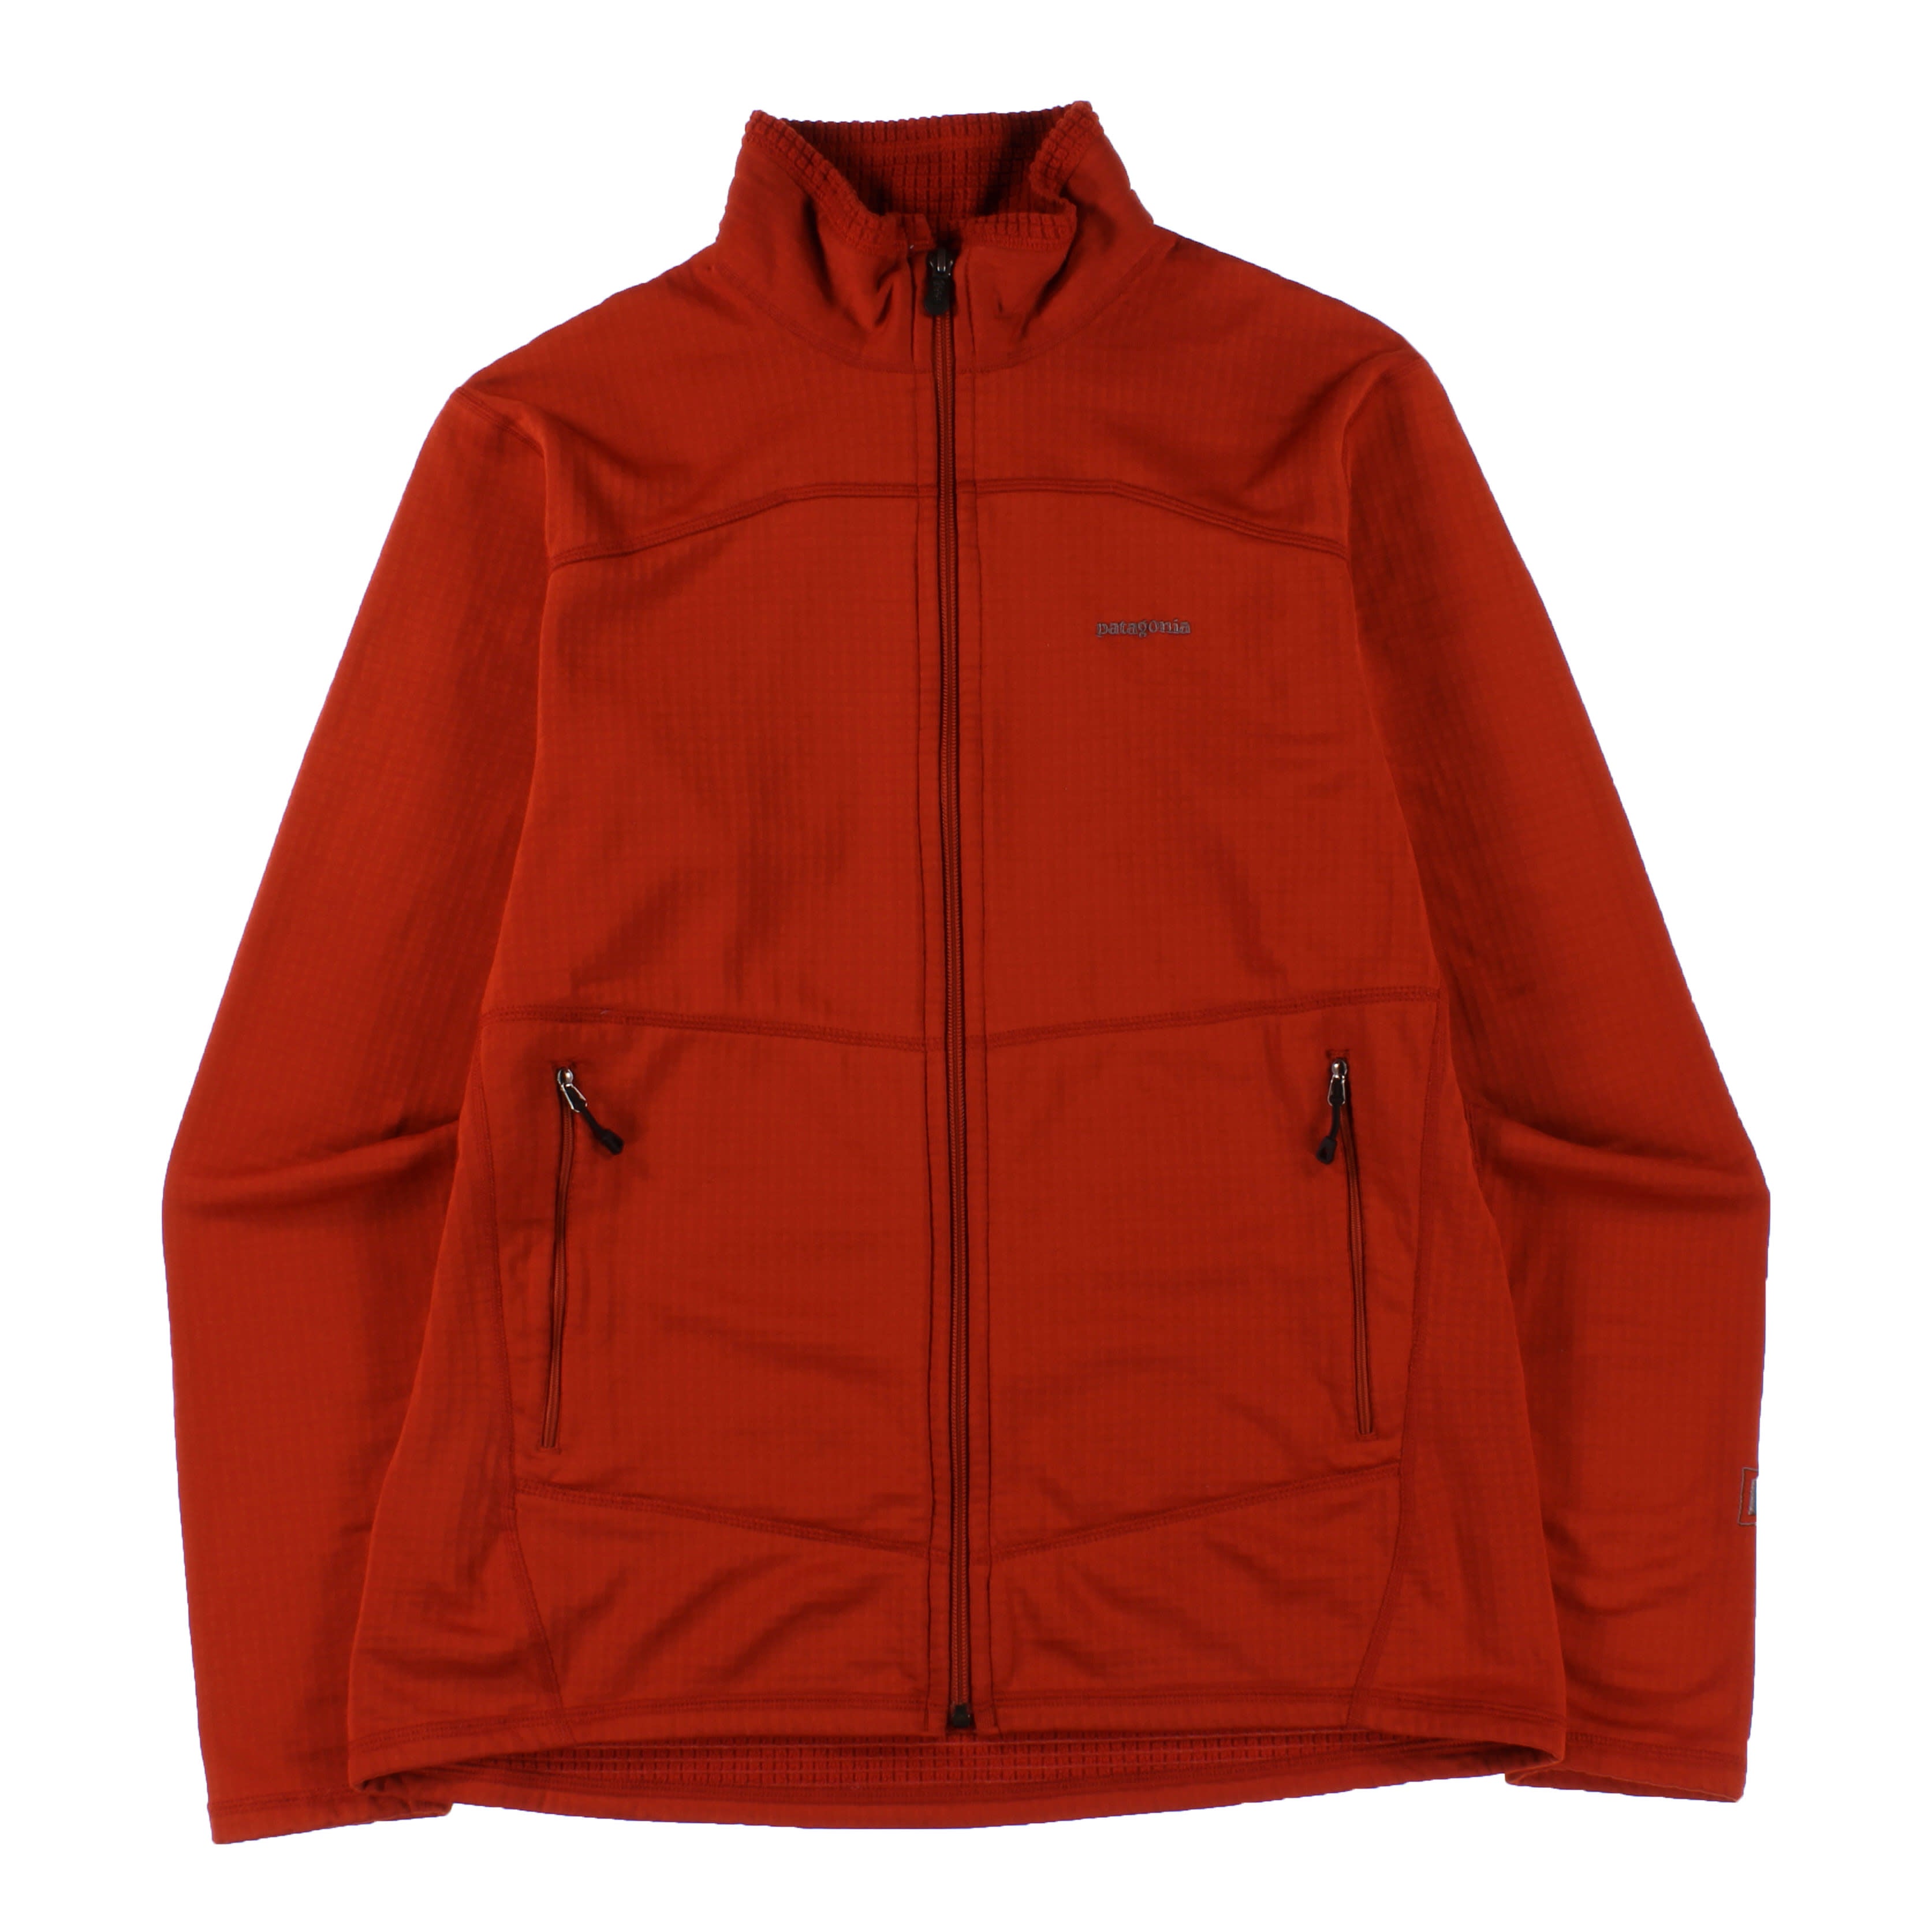 Men's R1® Full-Zip Jacket